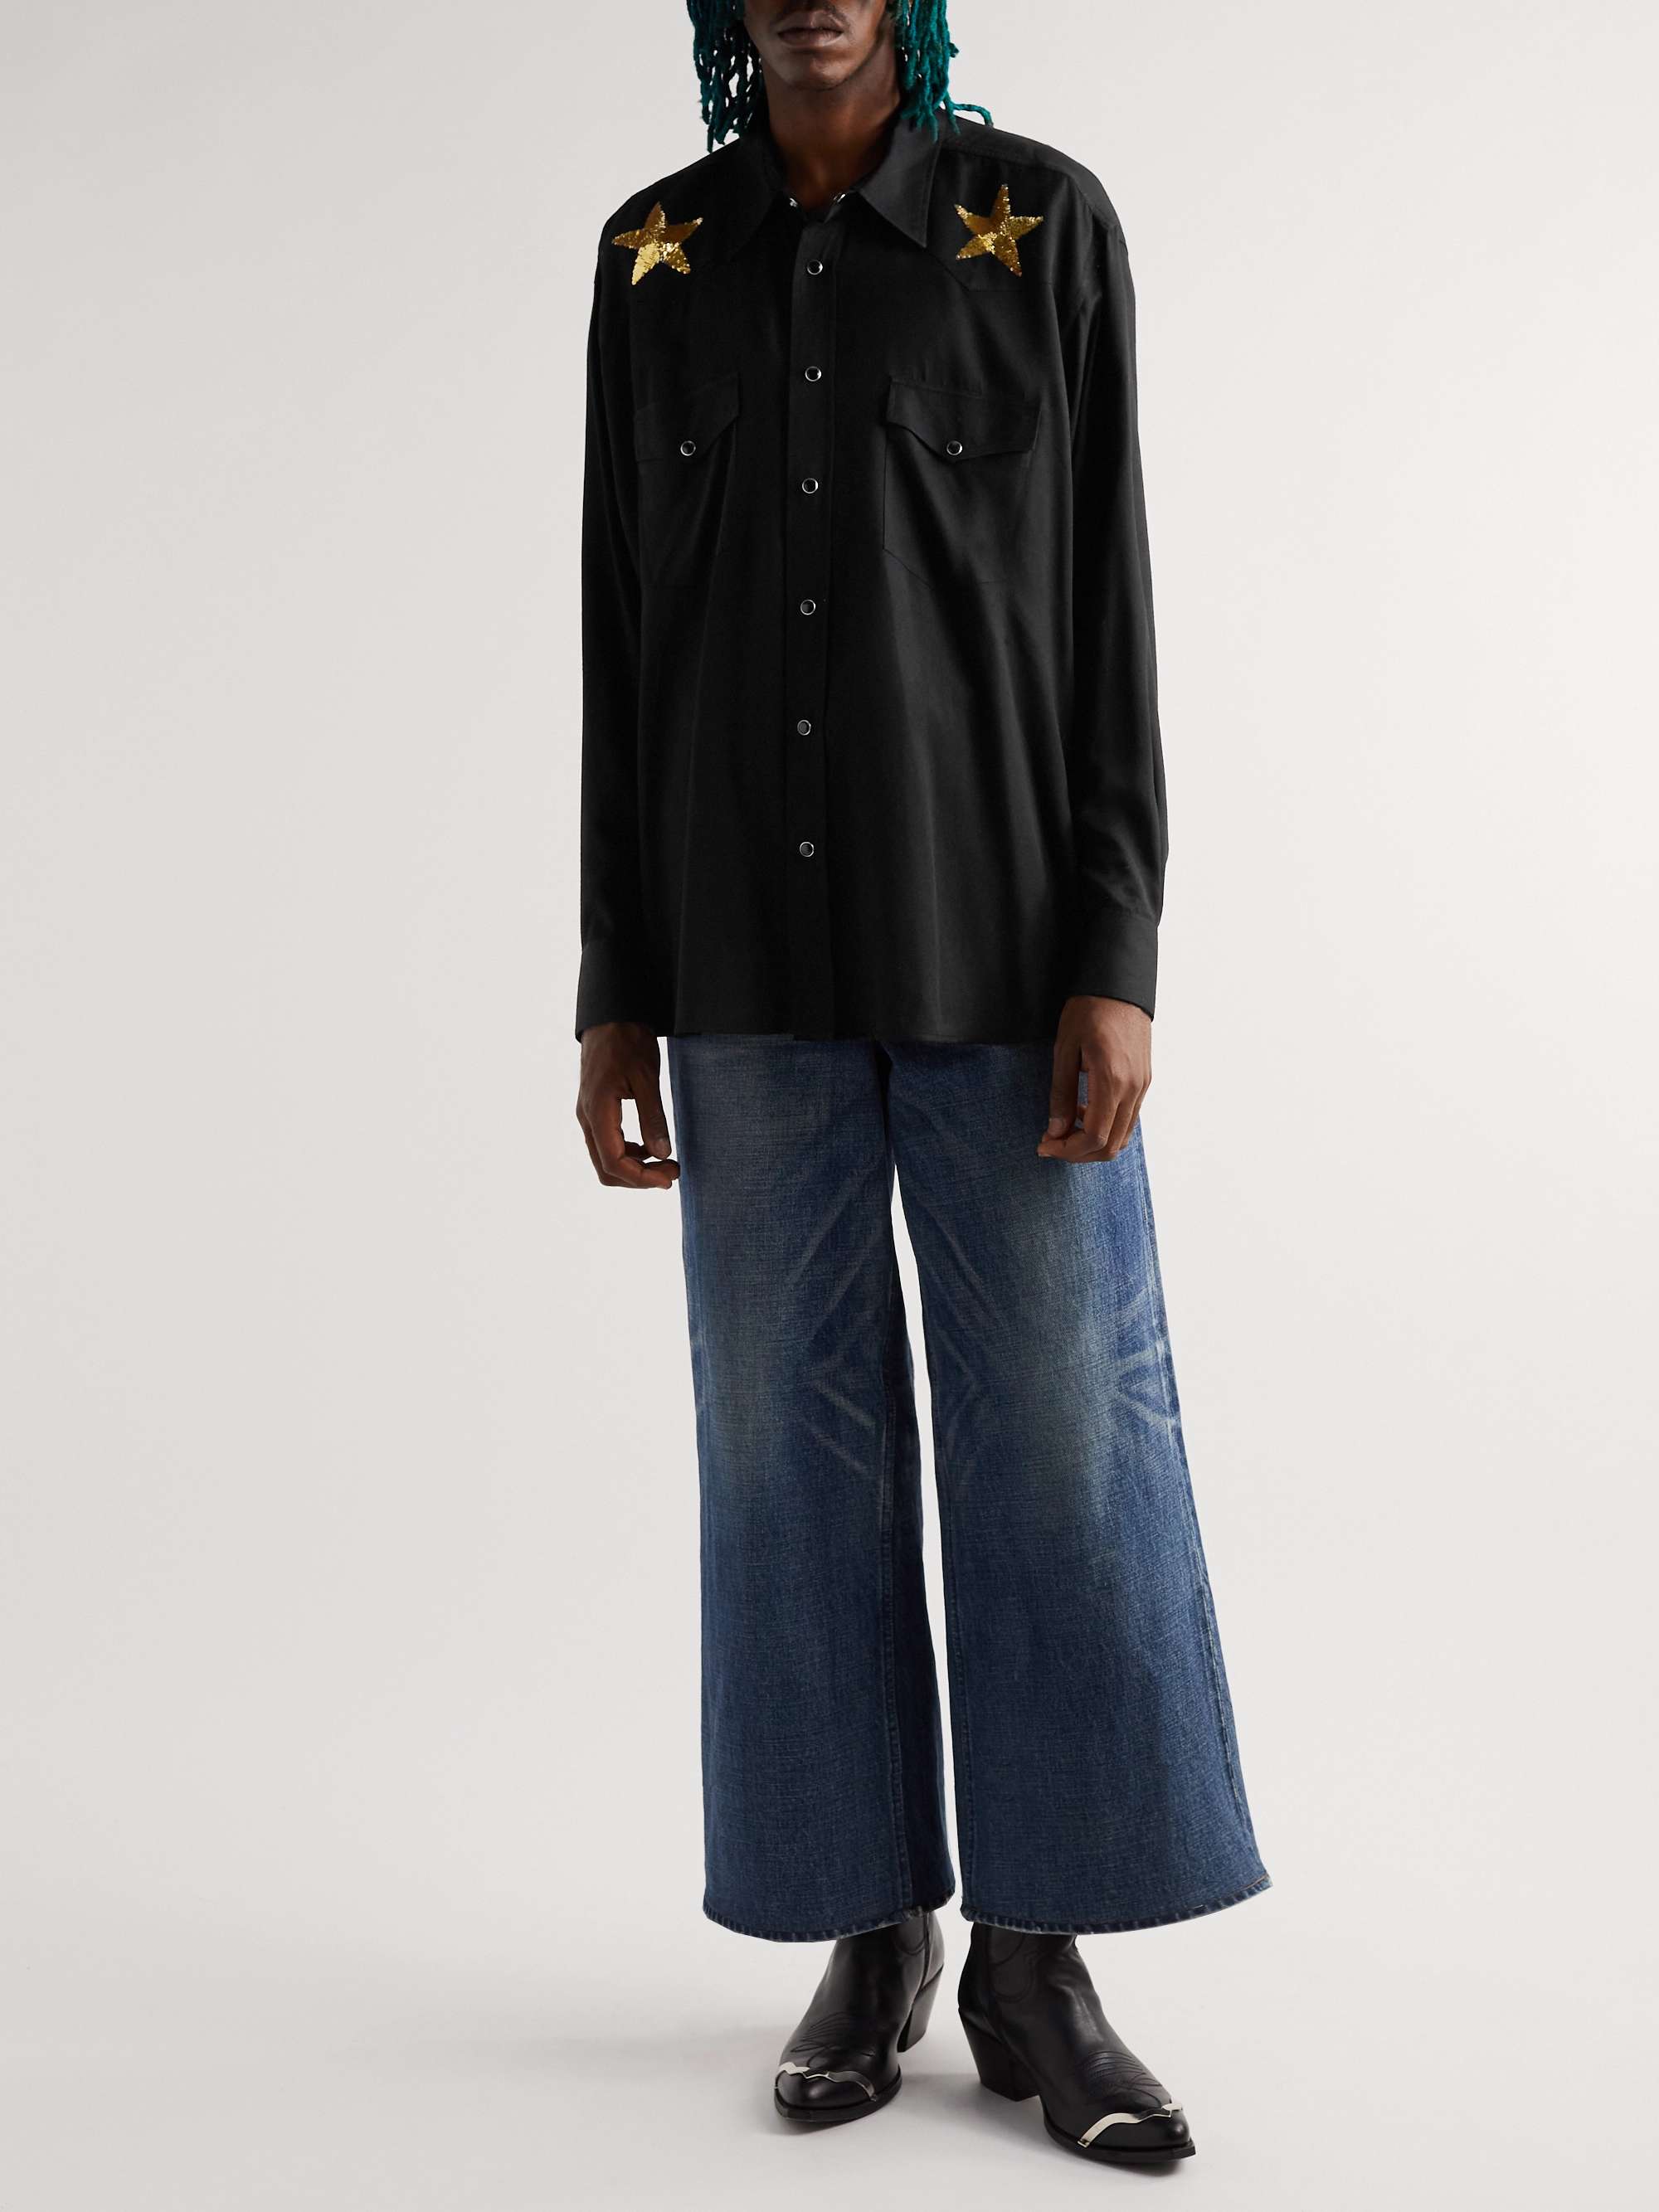 CELINE Sequin-Embellished Crepe Shirt